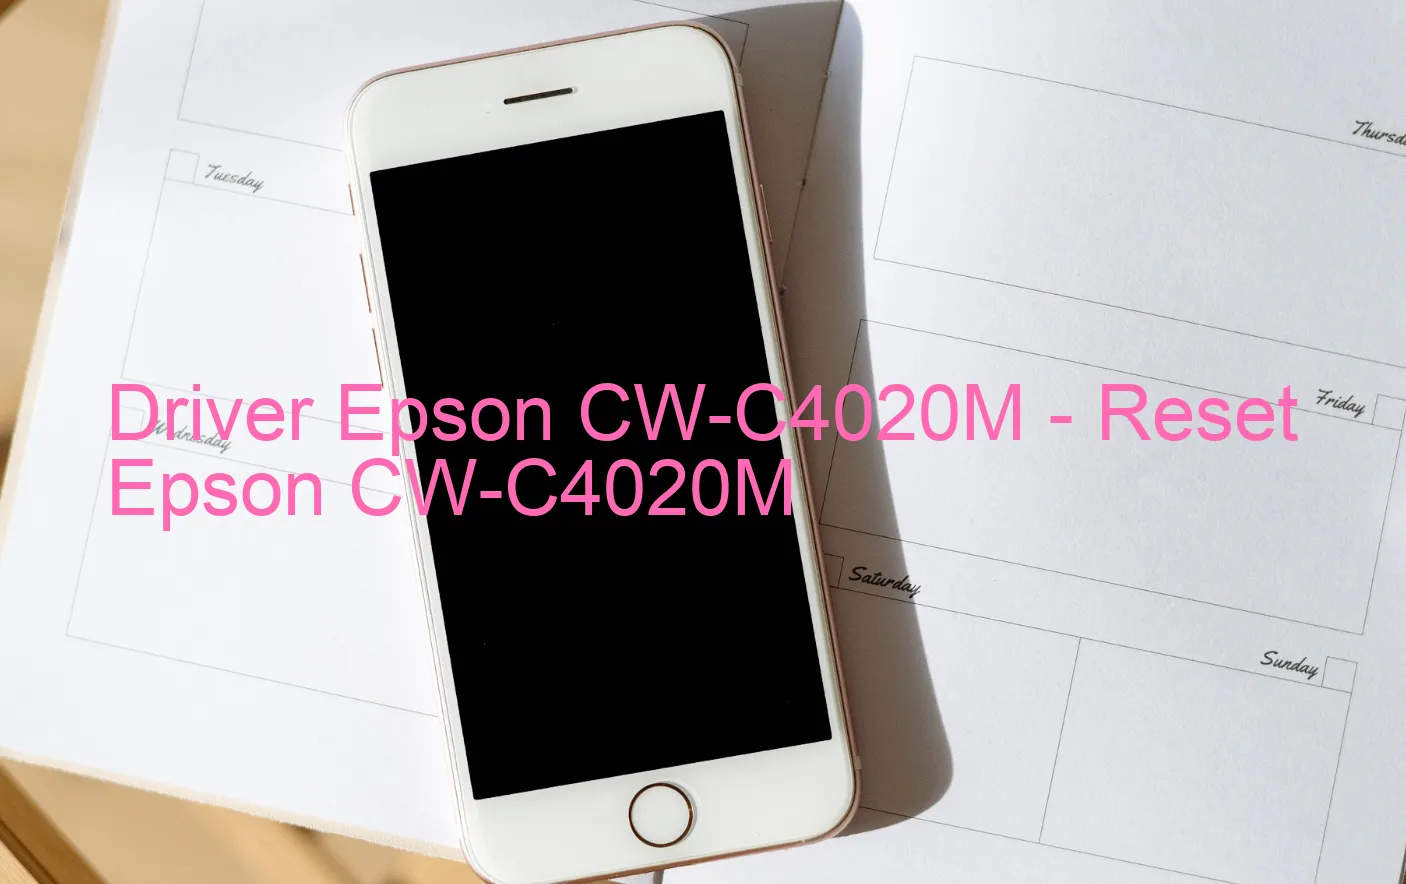 Epson CW-C4020Mのドライバー、Epson CW-C4020Mのリセットソフトウェア